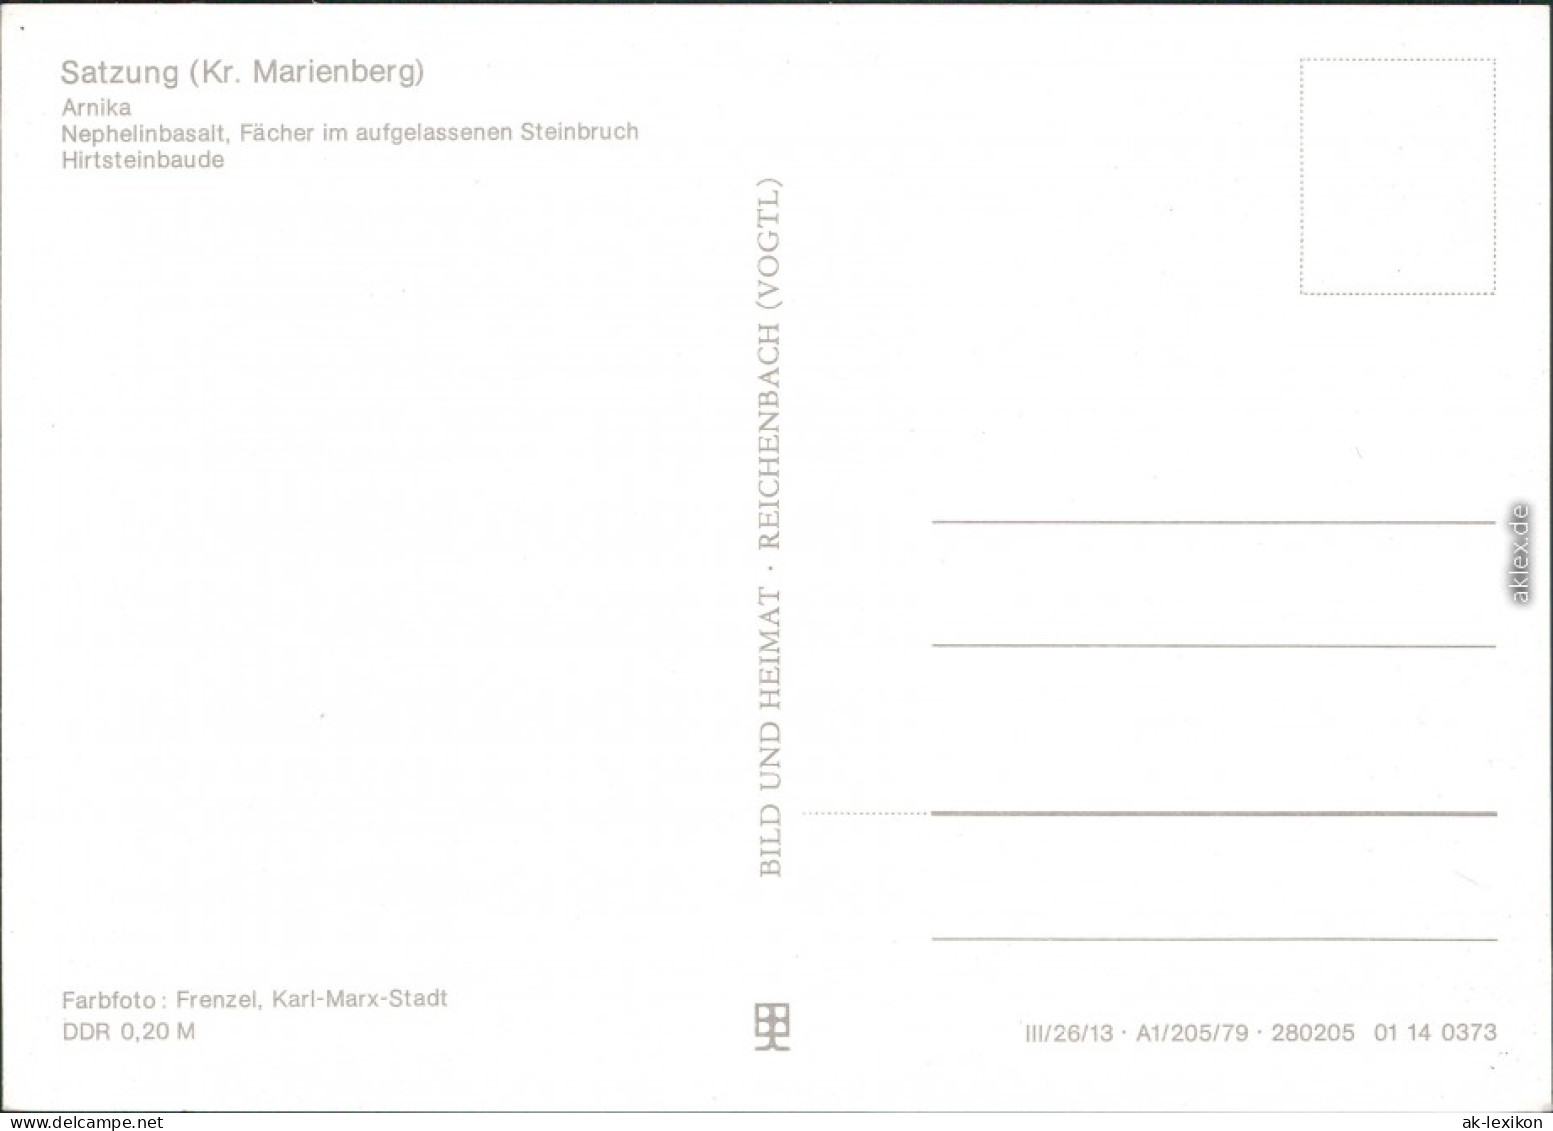 Satzung Am Hirtstein: Arnika, Nephelinbasalt, Steinbruch, Hirtsteinbaude 1982 - Marienberg